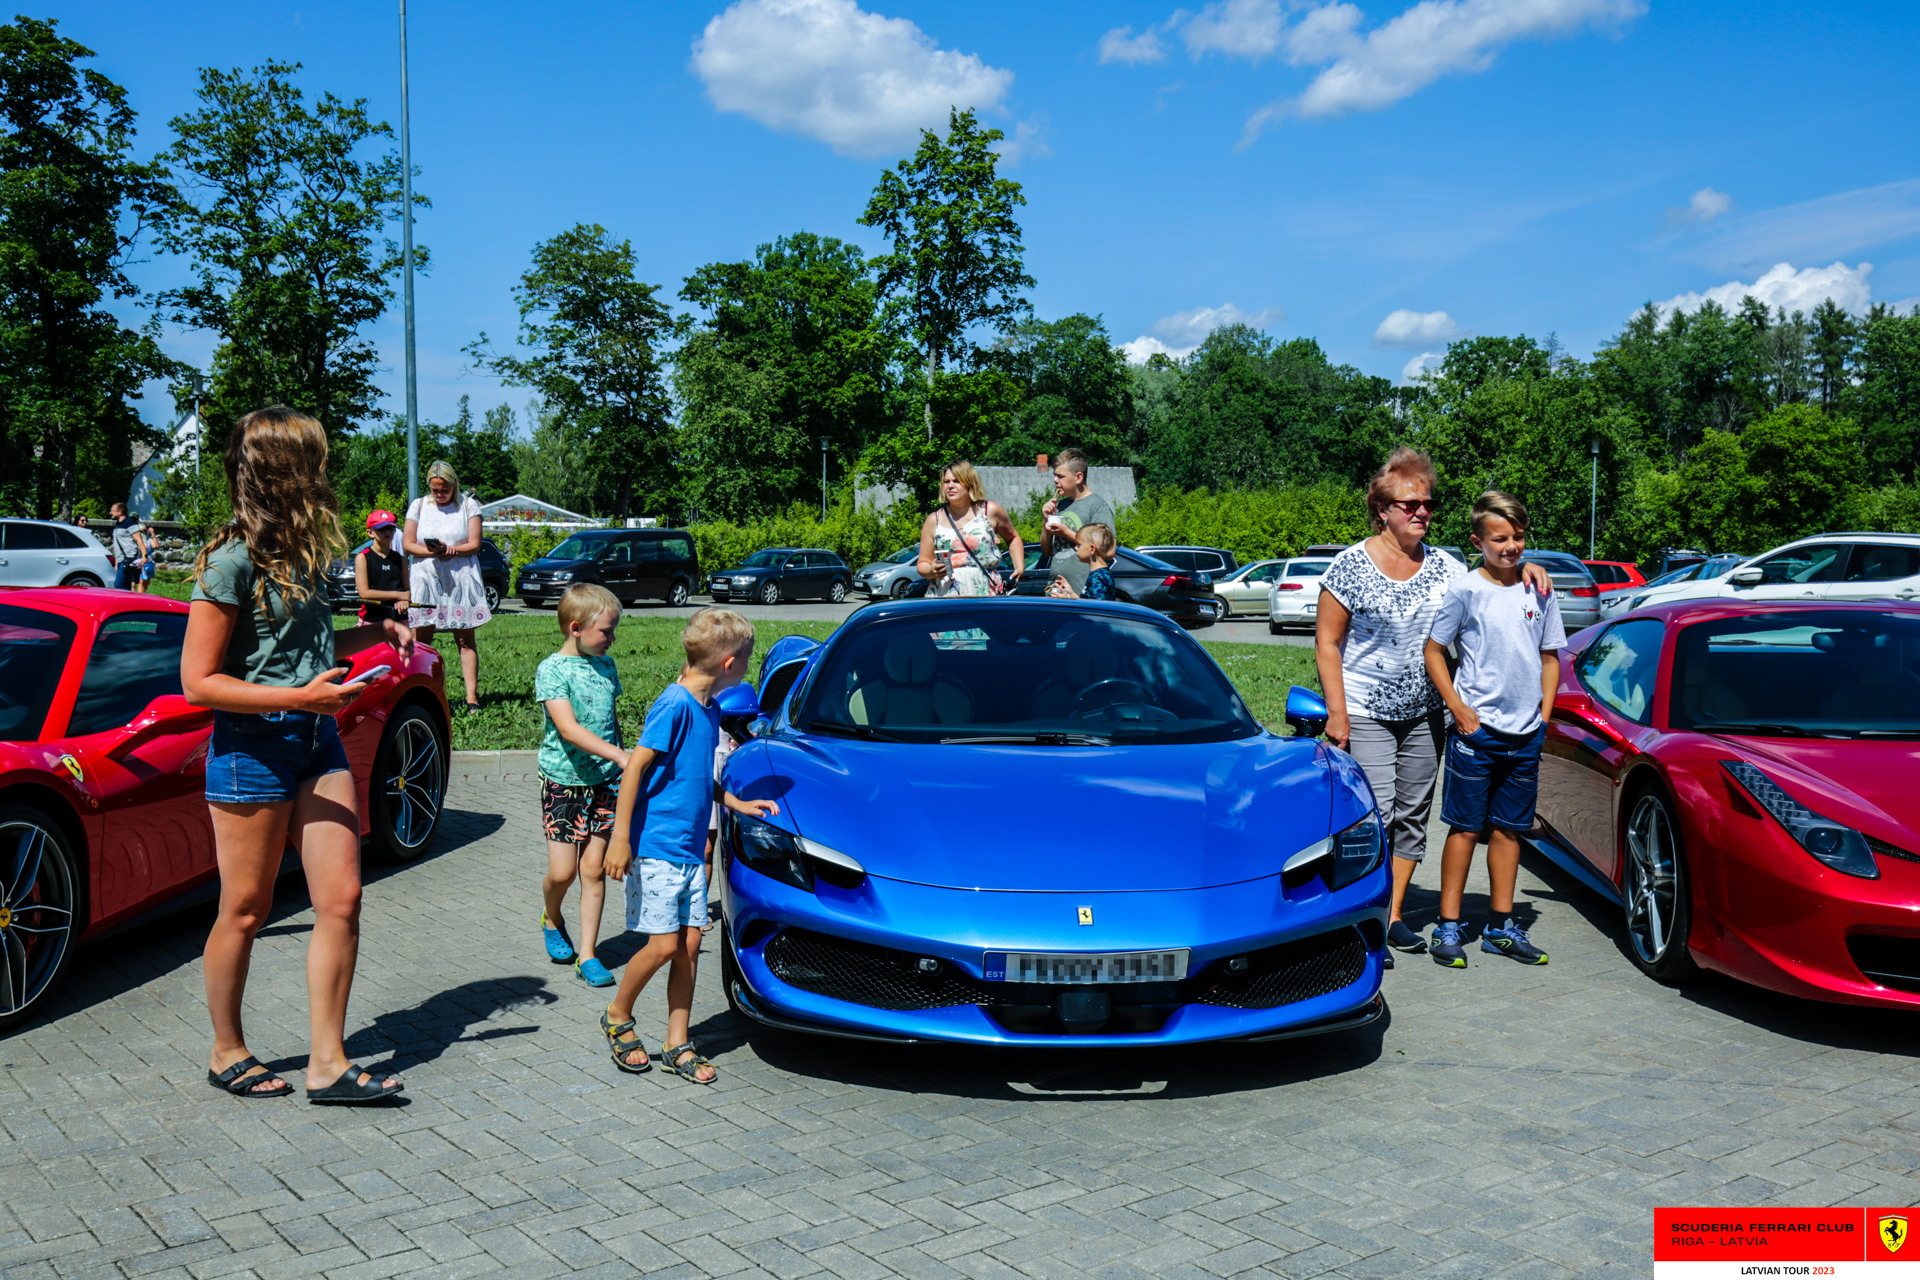 Sigulda: public around the Ferraris. 